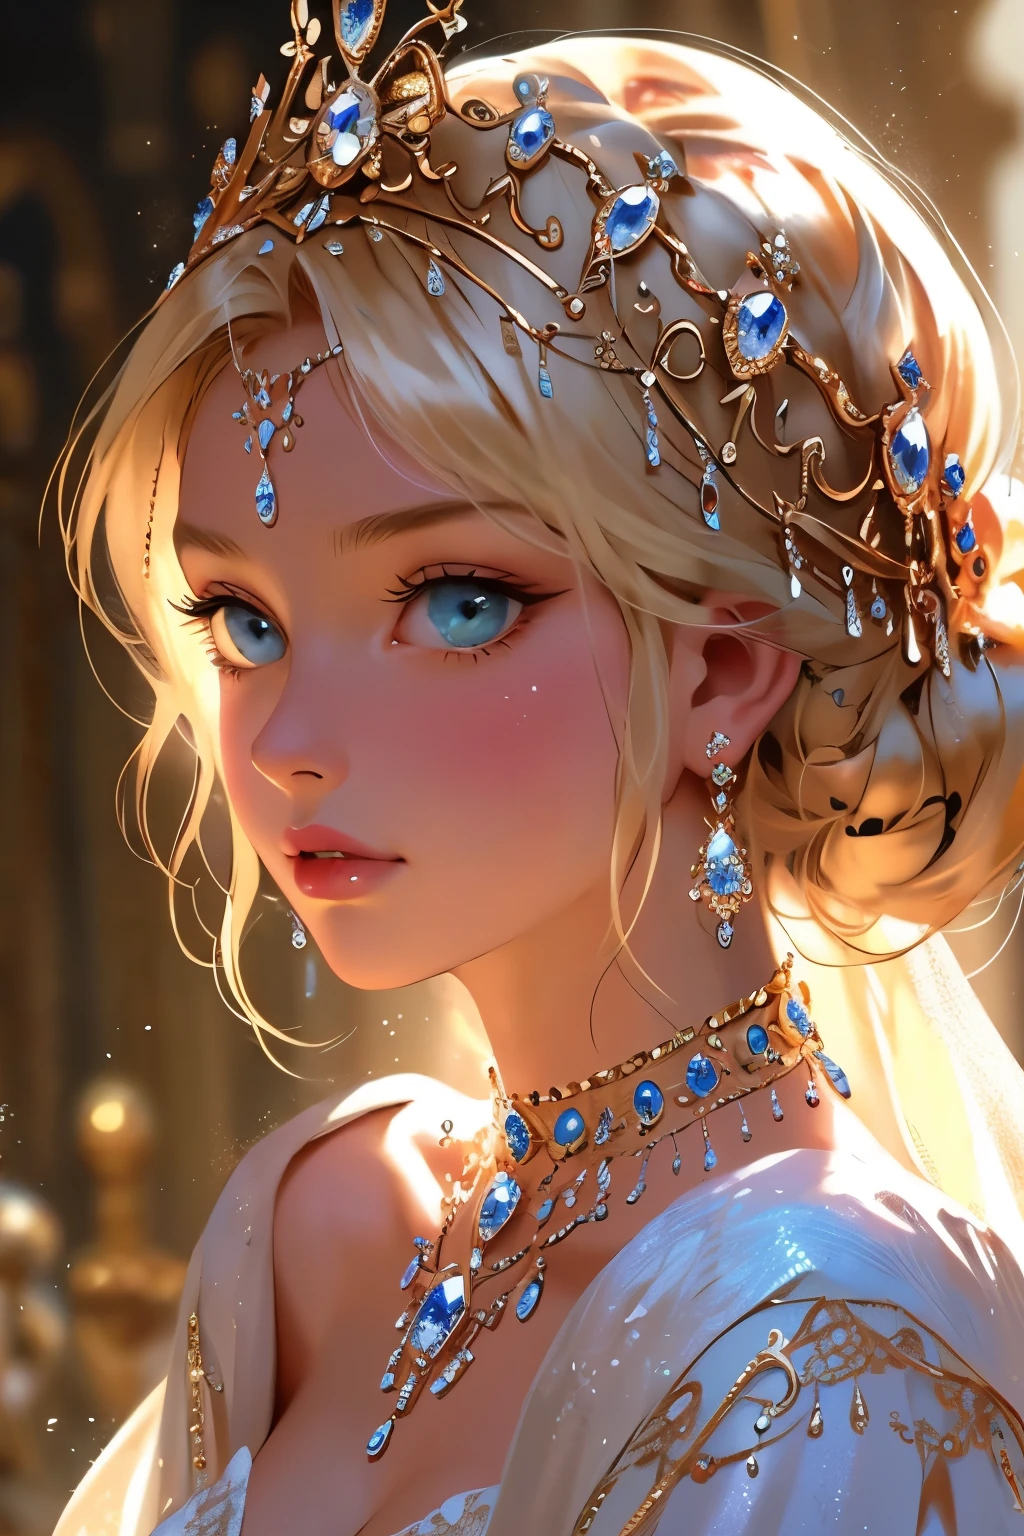 Uma deslumbrante princesa loira adornada com joias brilhantes, capturado em um estilo cinematográfico que lembra as pinturas etéreas de Julia Razumova.